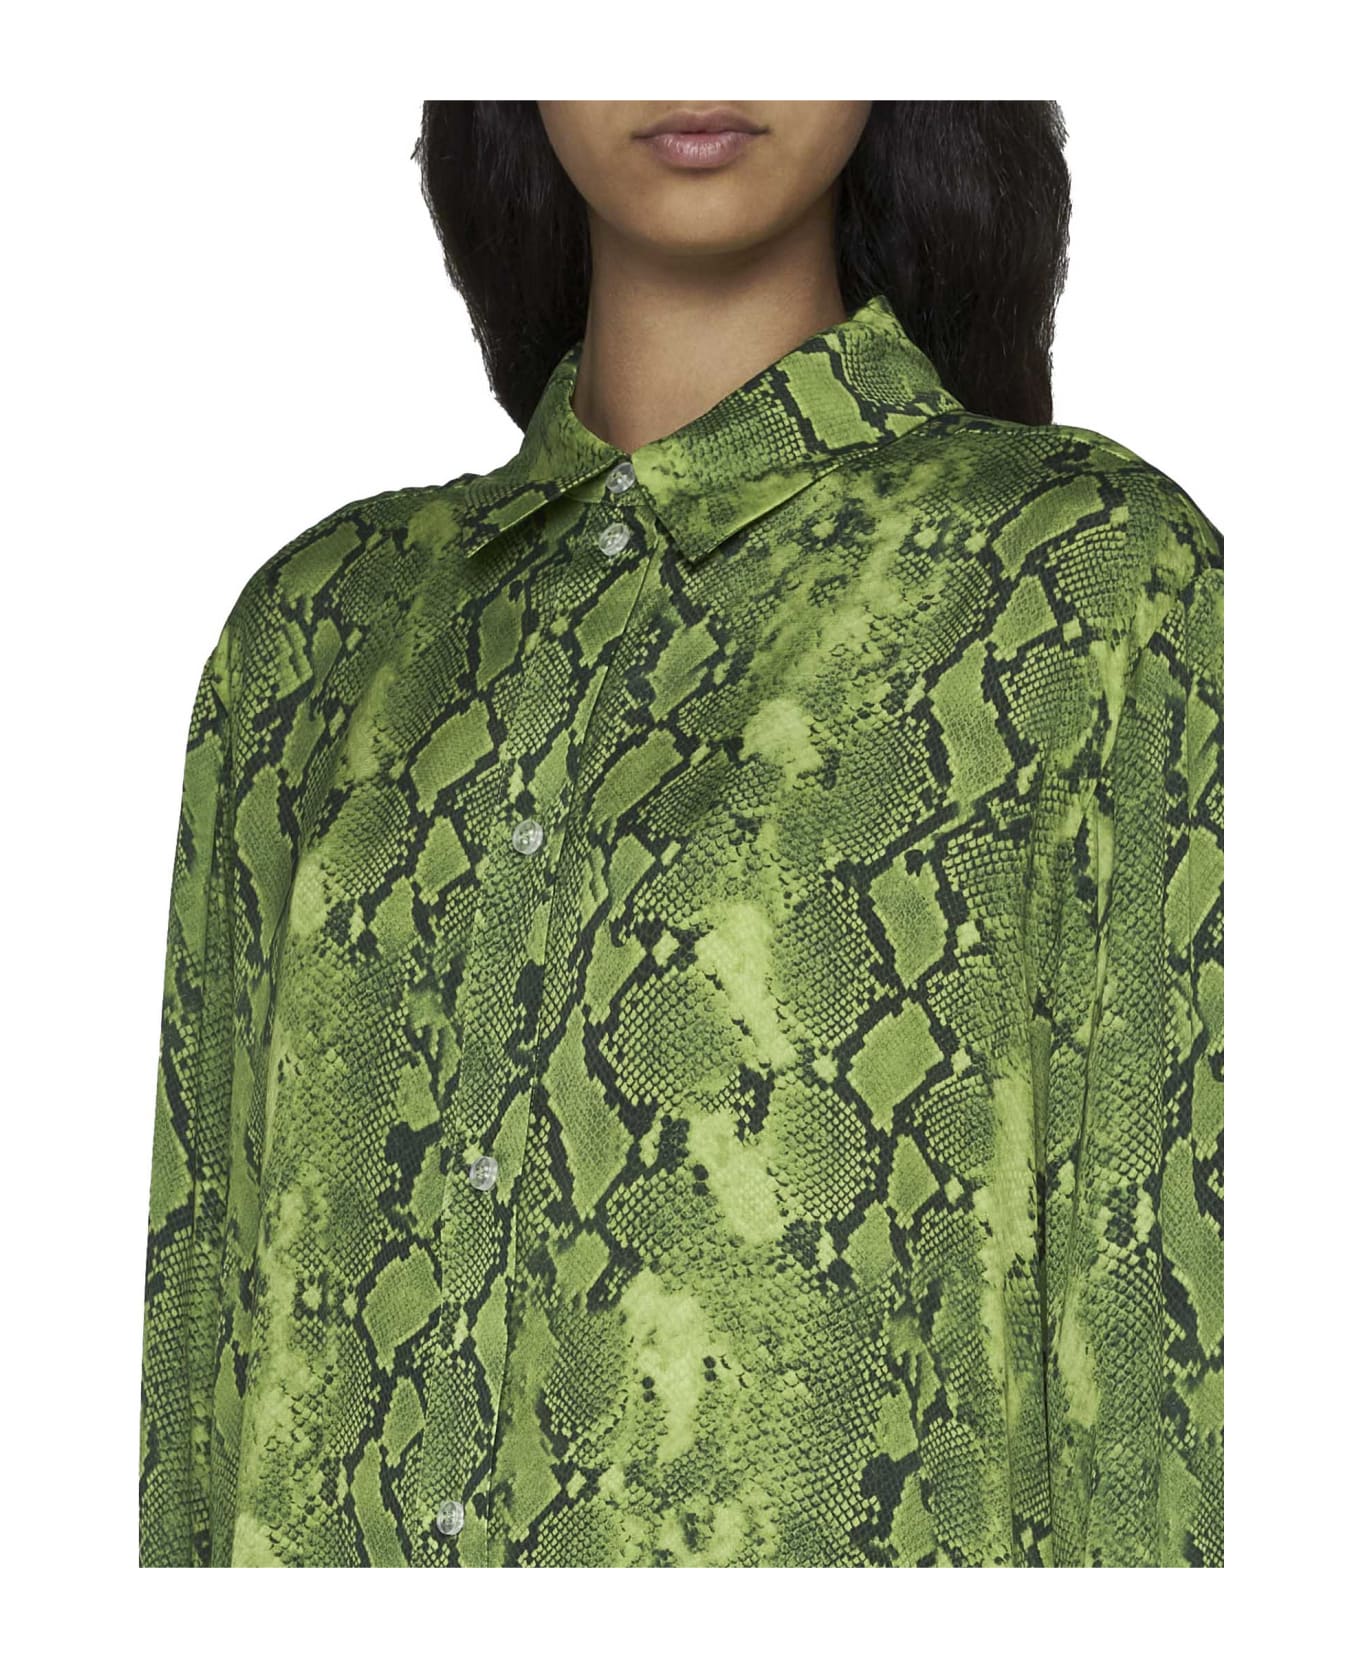 Stine Goya Shirt - Snakeskin green ブラウス